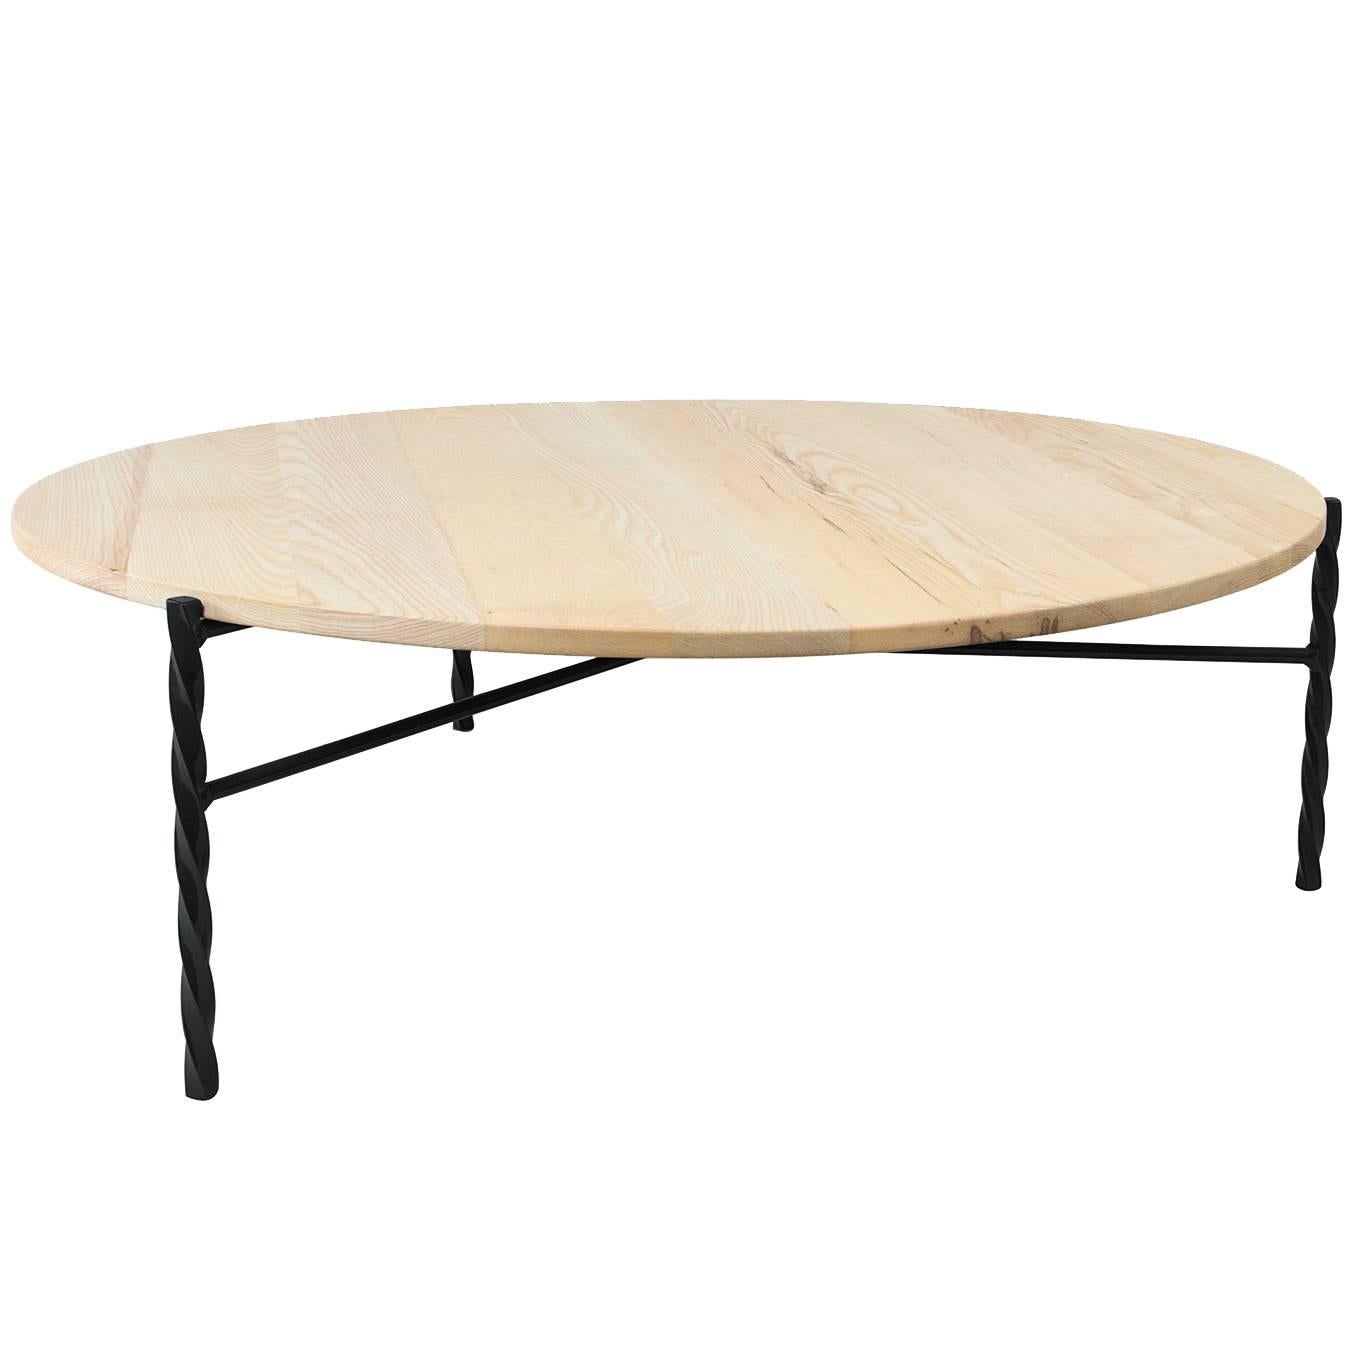 Table basse Von Iron de Souda, plateau en frêne naturel, fabriqué sur commande